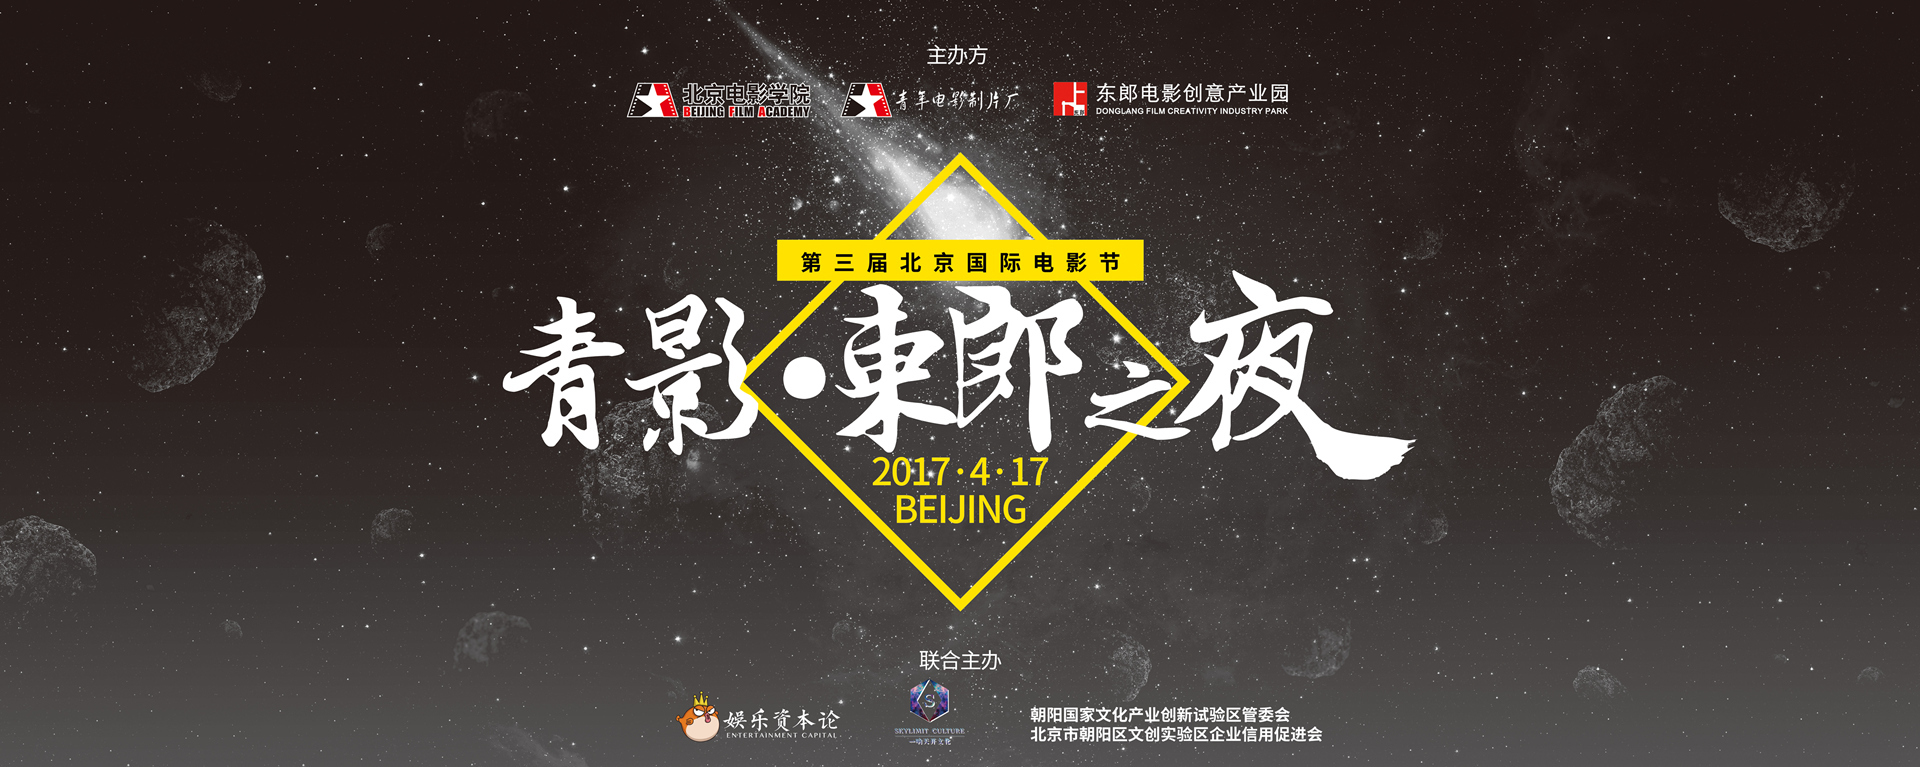 第七届 北京国际电影节 暨 第三届青影·东郎之夜